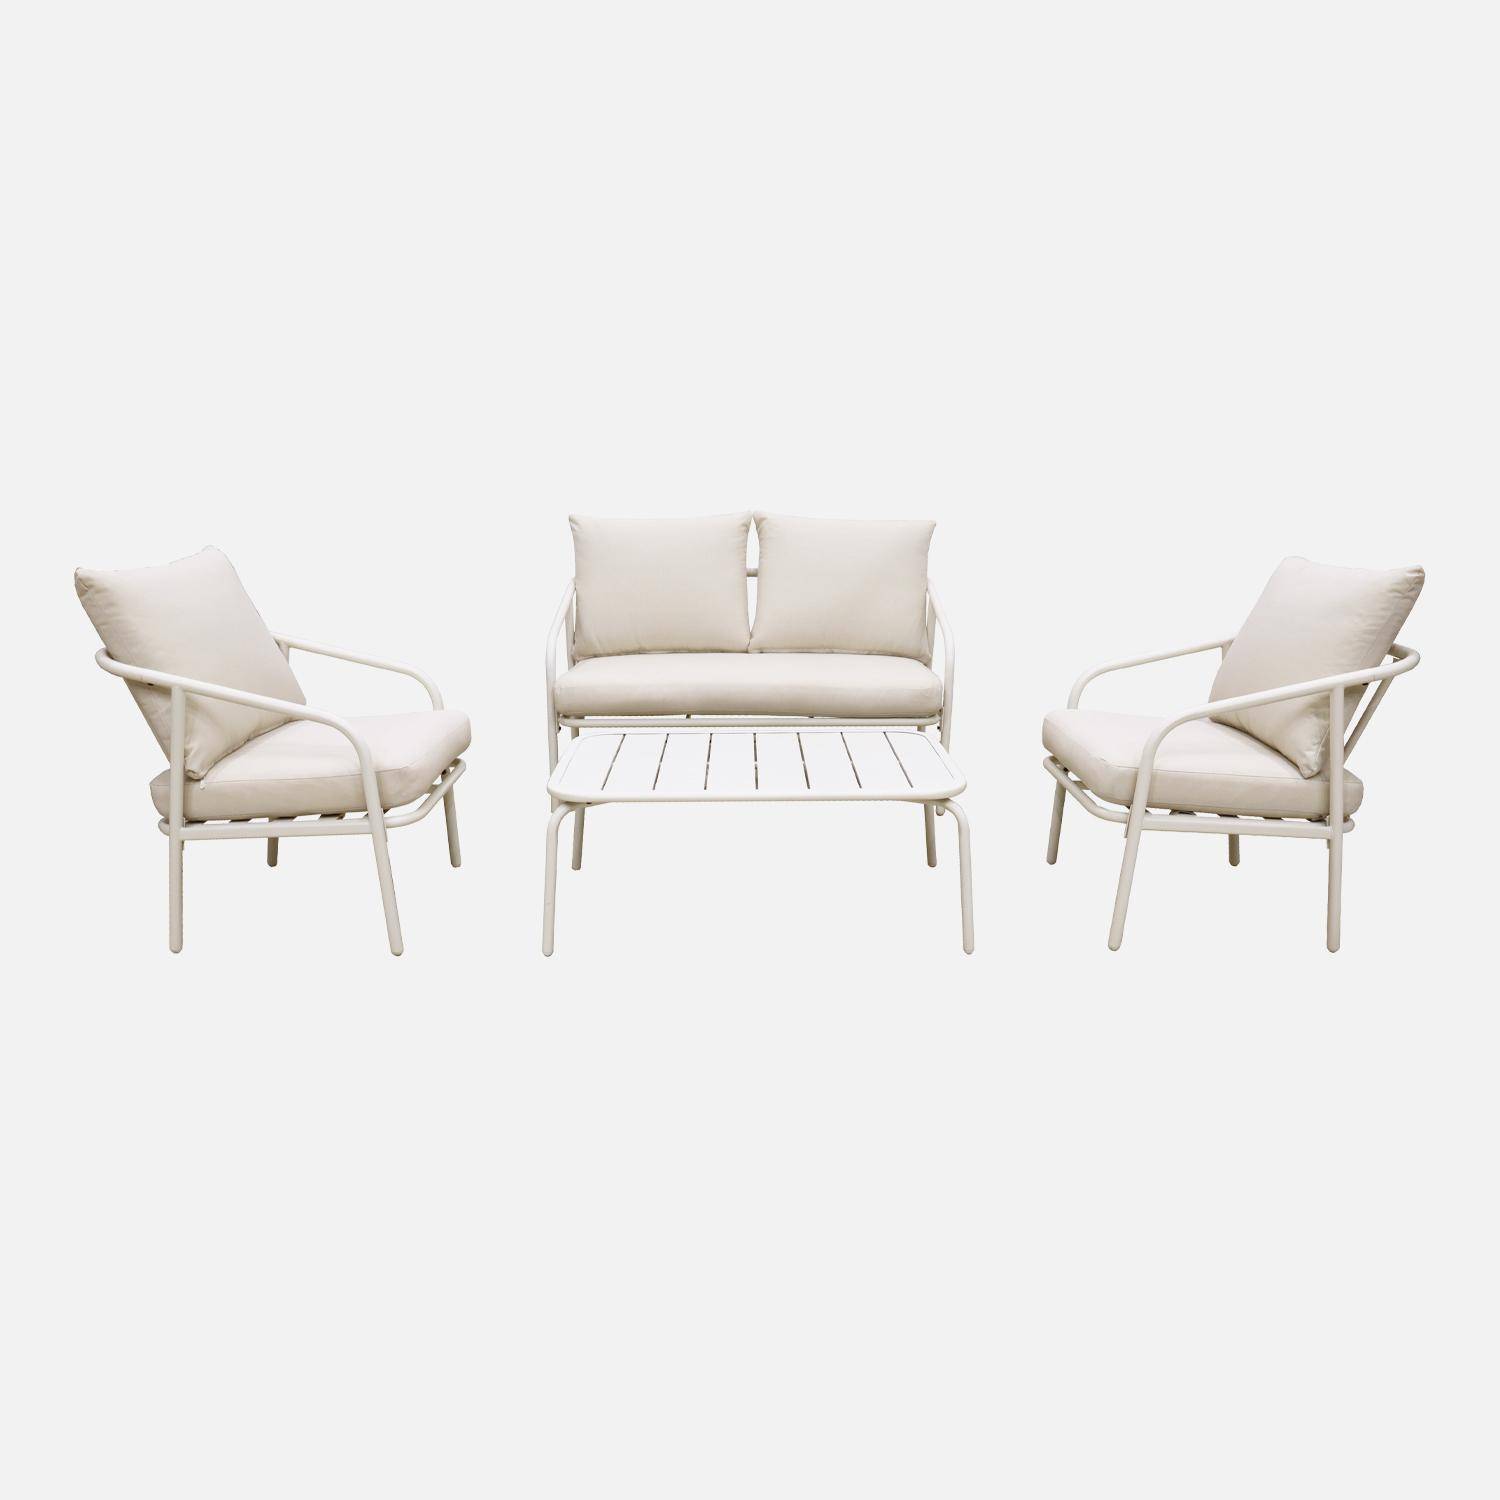 Salon de jardin en métal 4 places blanc, coussins beige, design épuré arrondi  ,sweeek,Photo4